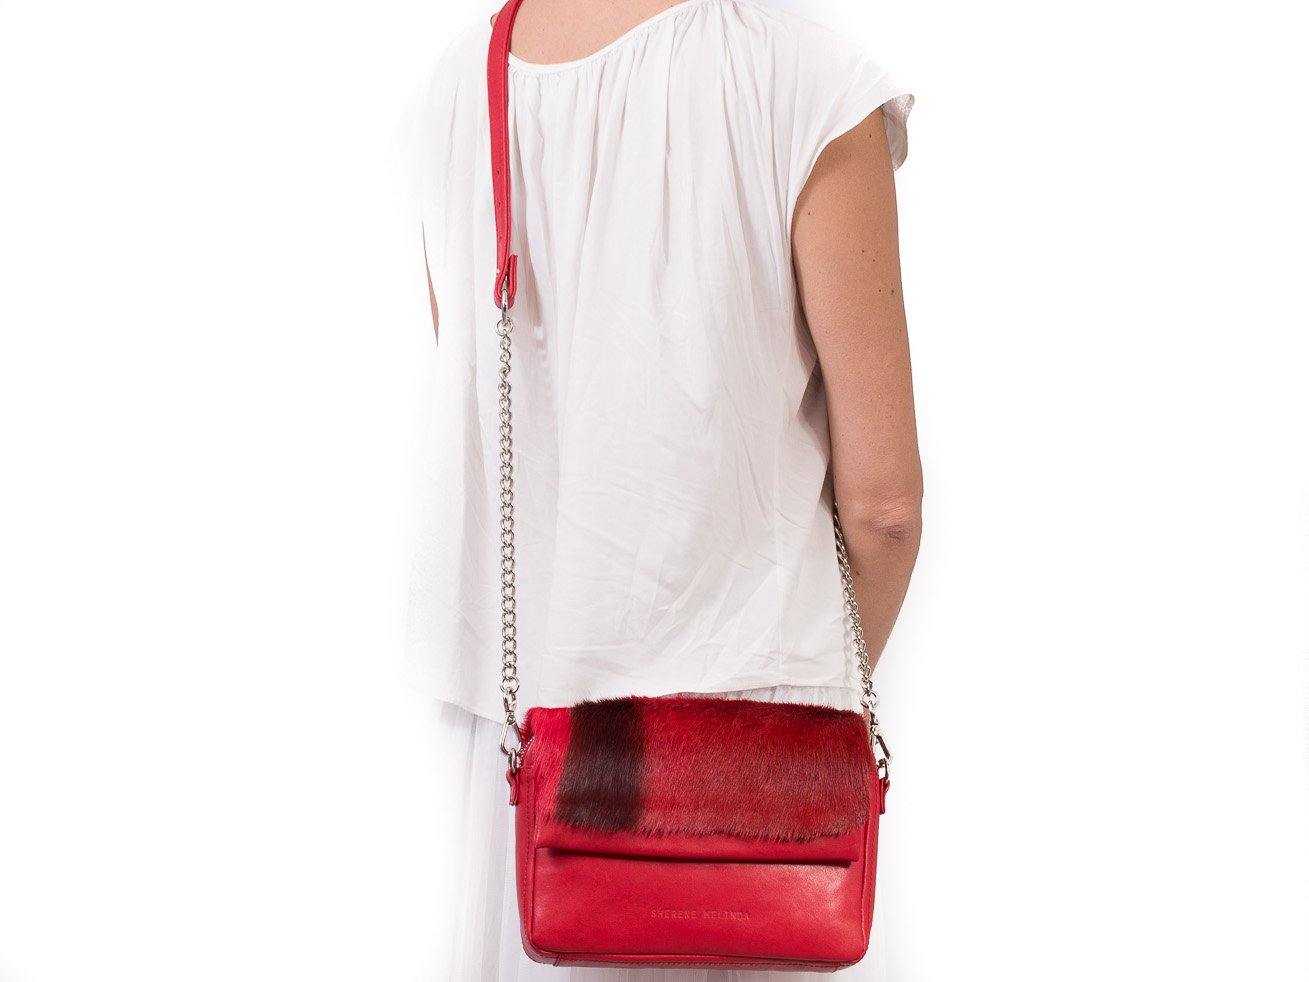 Red Shoulder Bag with a stripe - SHERENE MELINDA